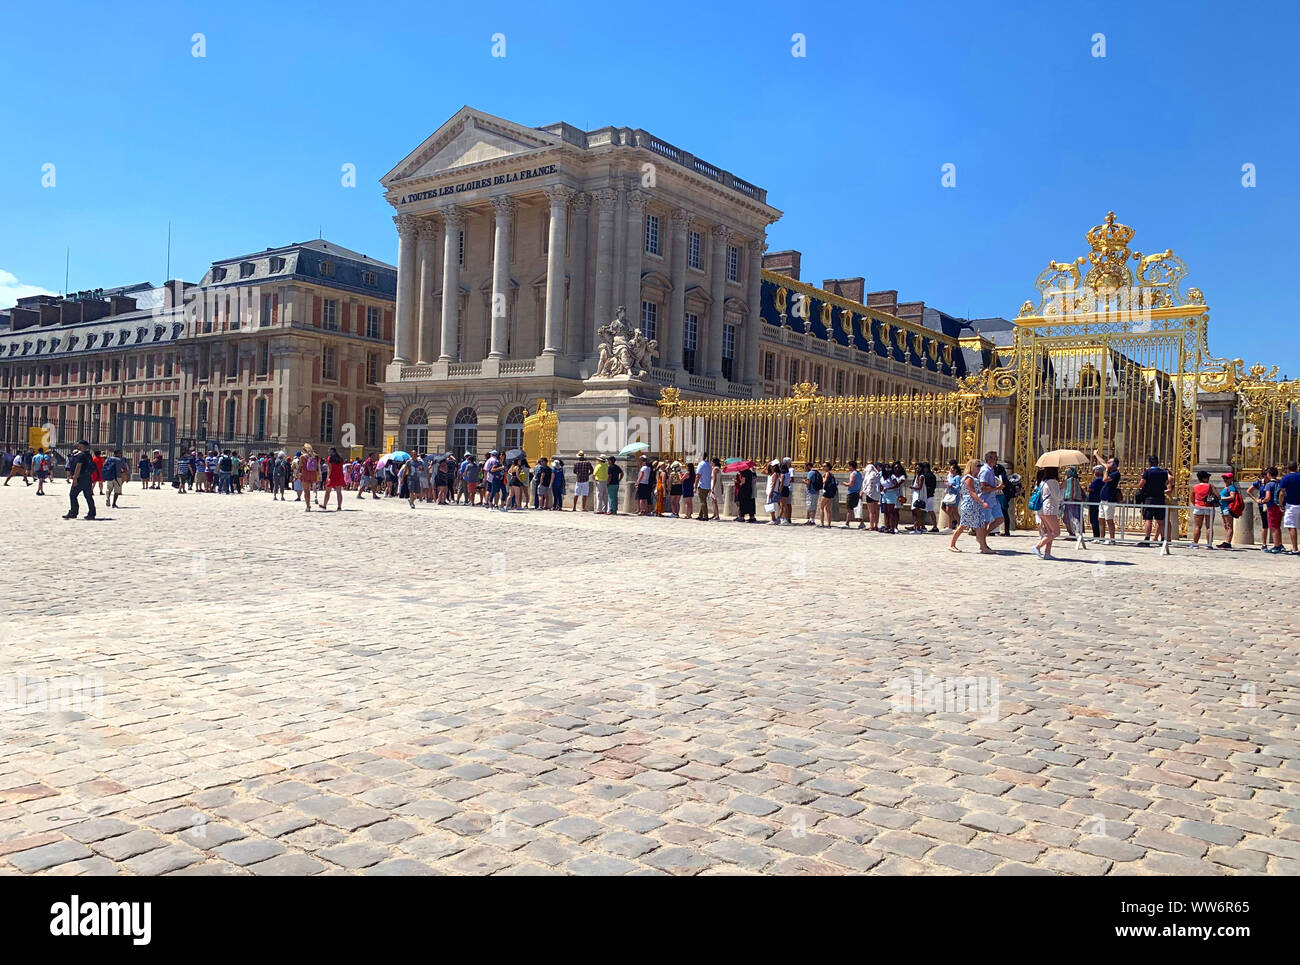 Versailles / France - Juillet 6, 2019 : Extrêmement énorme queue de touristes dans le Palais de Versailles en attente de leurs billets à Paris, France, l'heure d'été. Banque D'Images